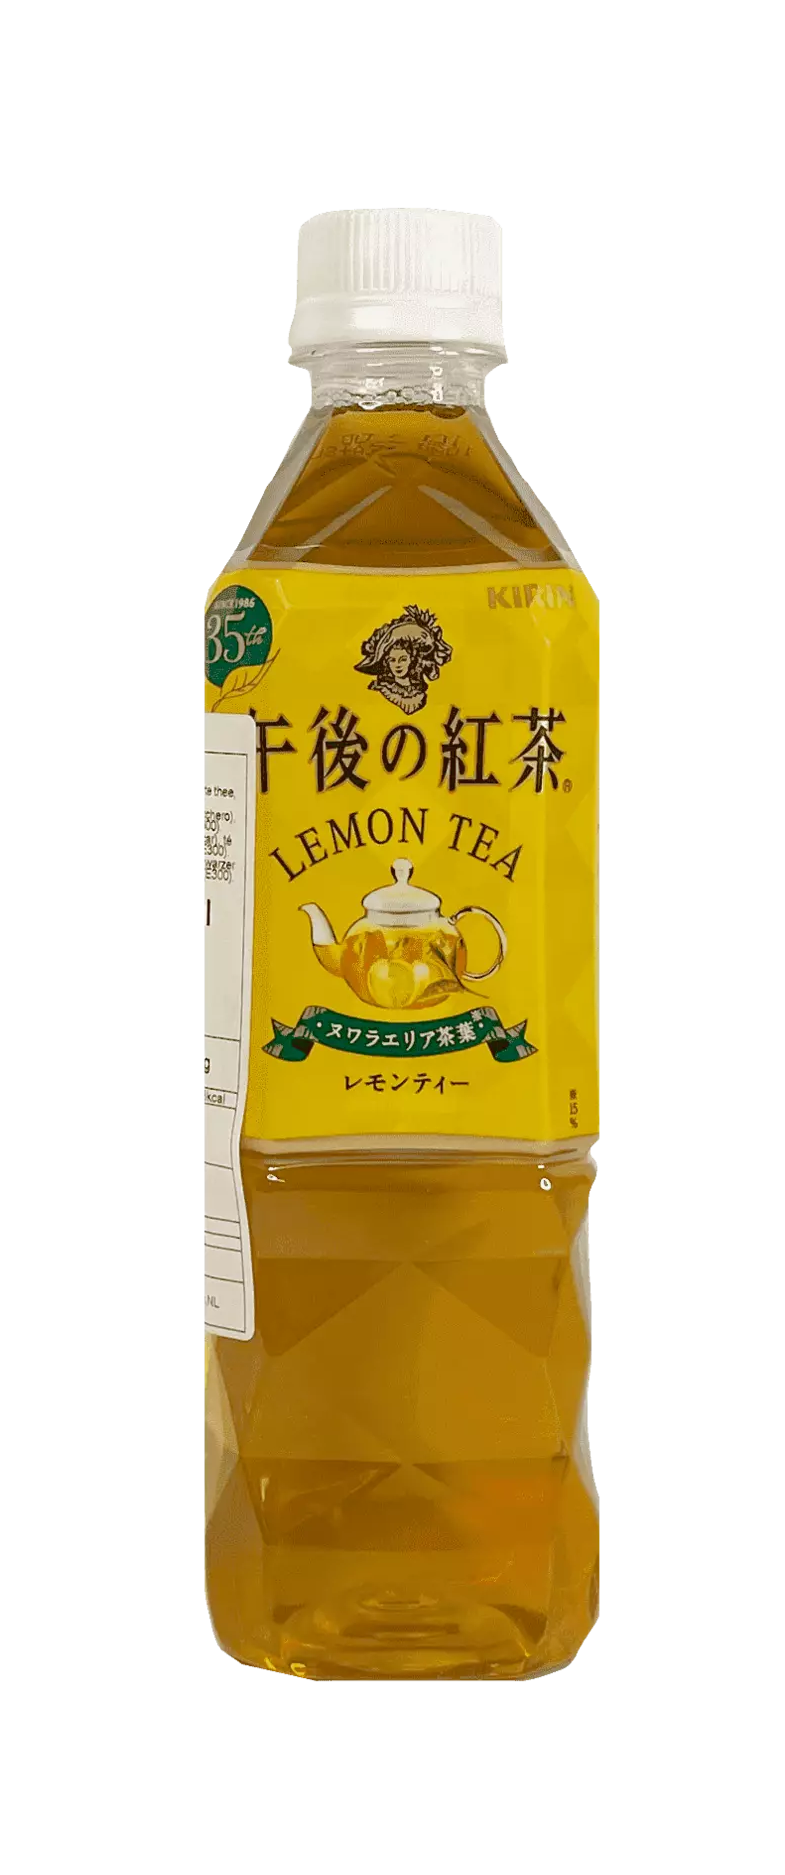 午后红茶 柠檬味 500 毫升 Kirin 日本